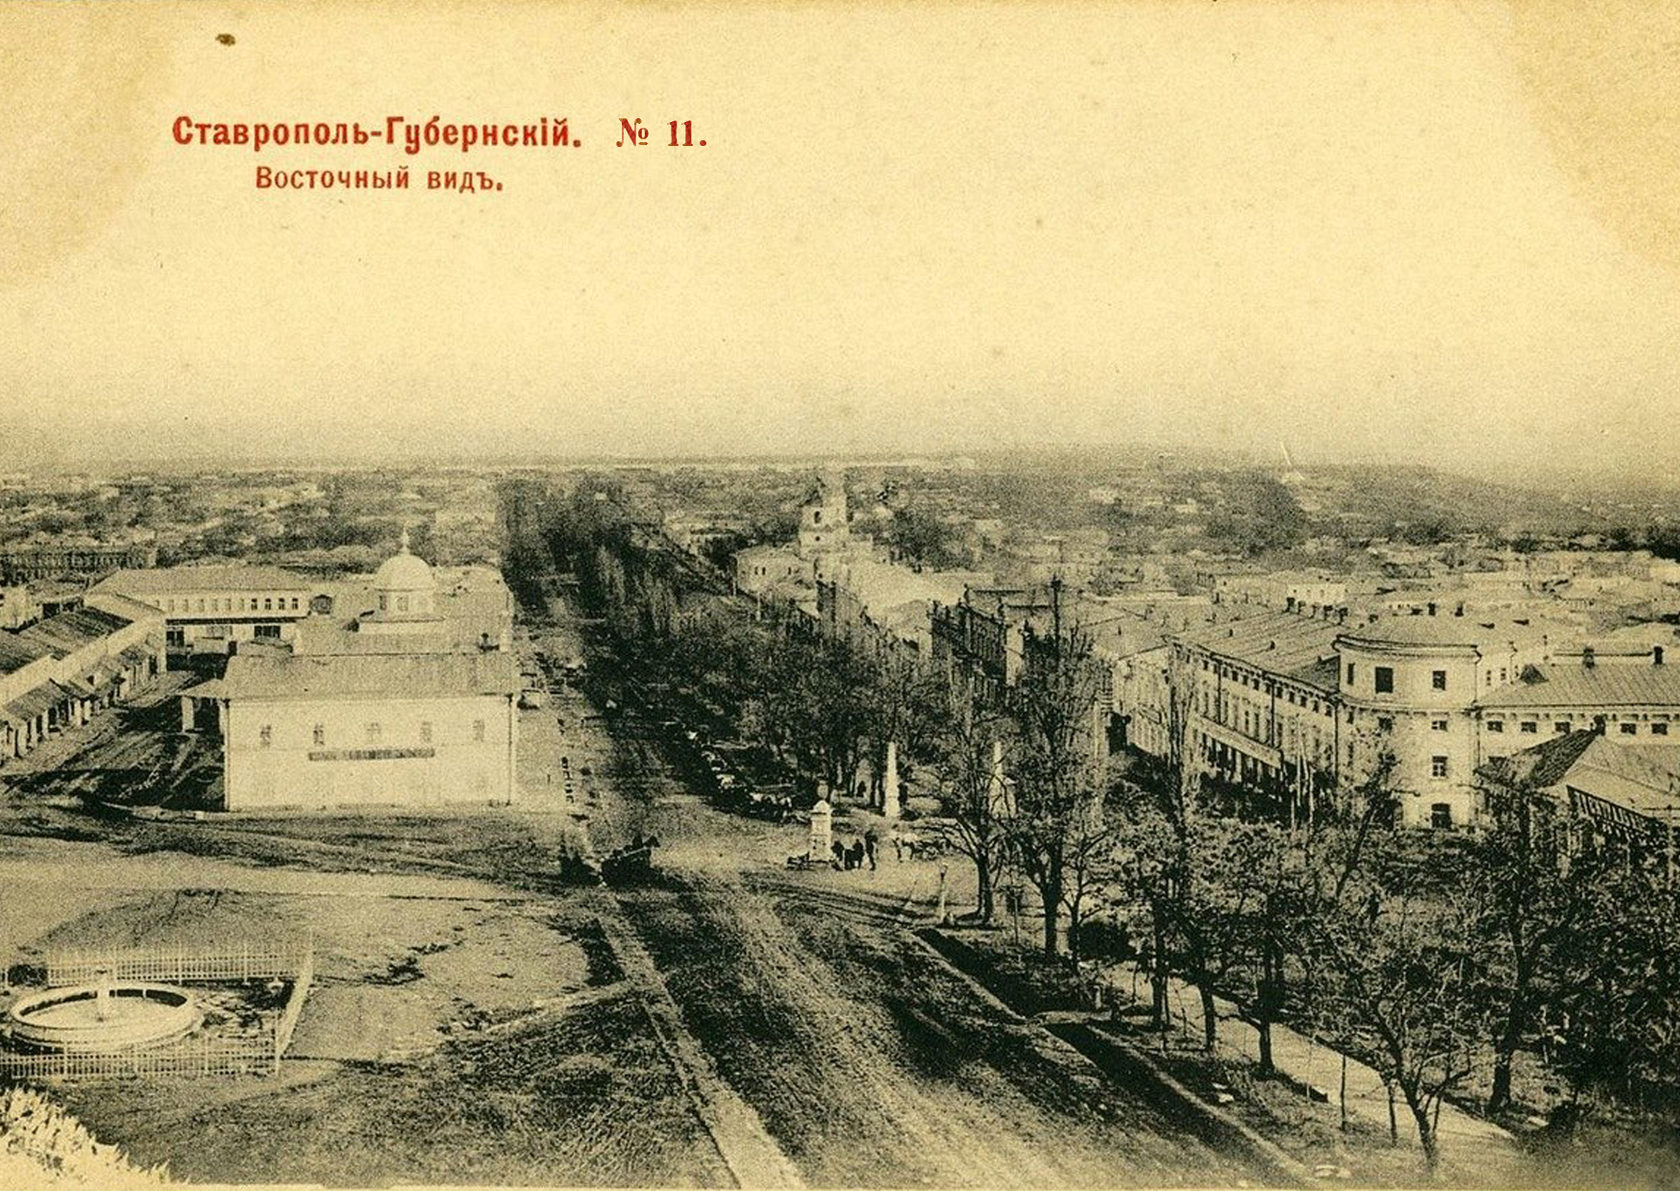 фото почтовая ретро-открытка дореволюционного времени с видом города Ставрополя